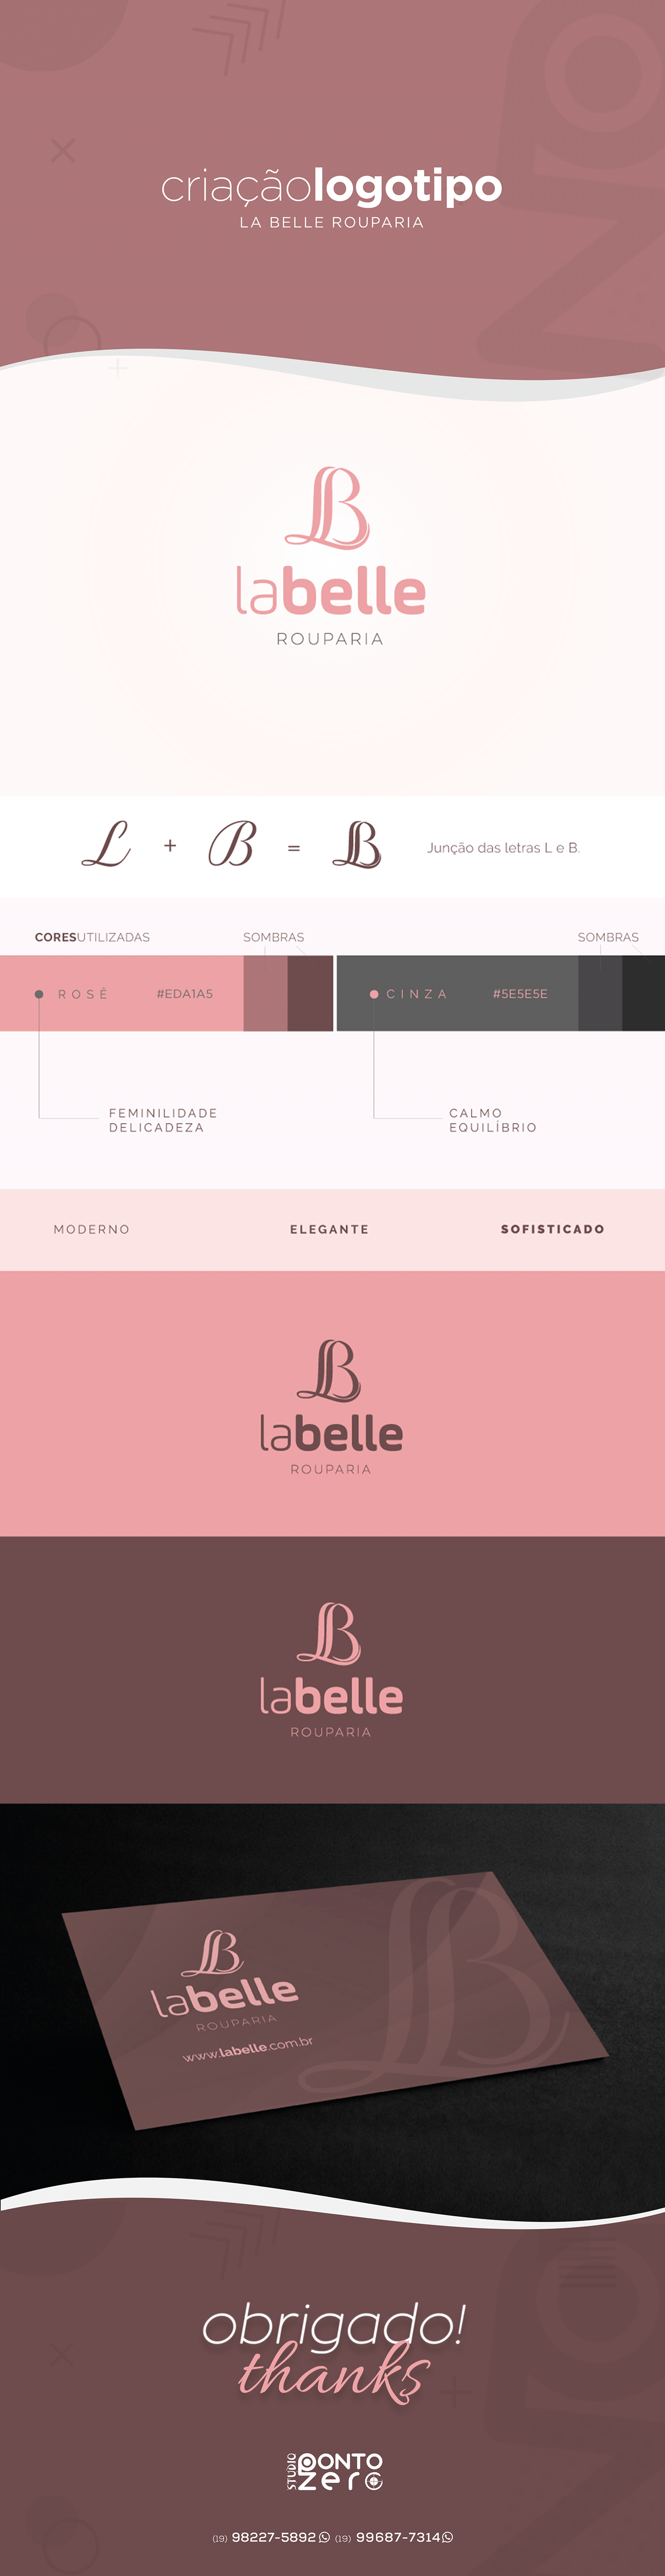 criação de logo criação de logotipo design gráfico logo logo la belle logo loja logo rouparia Logotipo logotipo loja logotipo rouparia